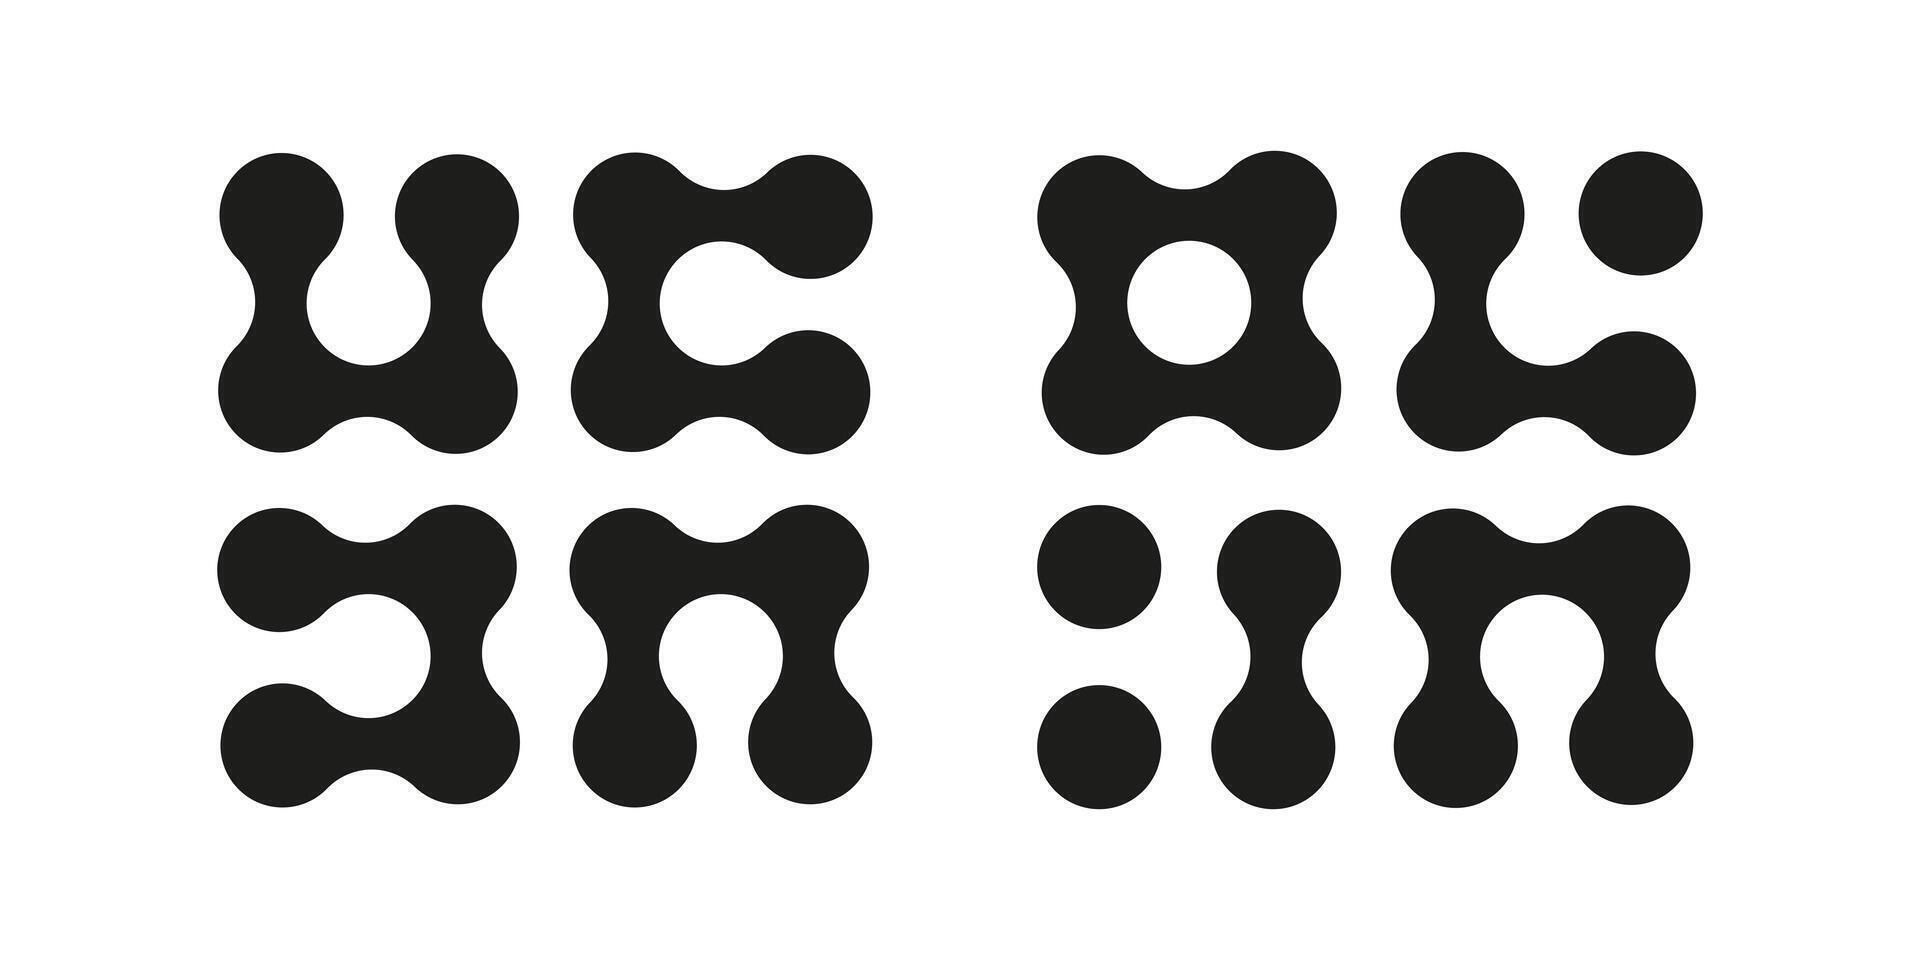 metaball iconos conectado puntos señales. integración resumen símbolo. círculos sencillo modelo. punto movimienot. conectado manchas metaballs transición. conjunto de plano logotipos vector gráfico ilustración.